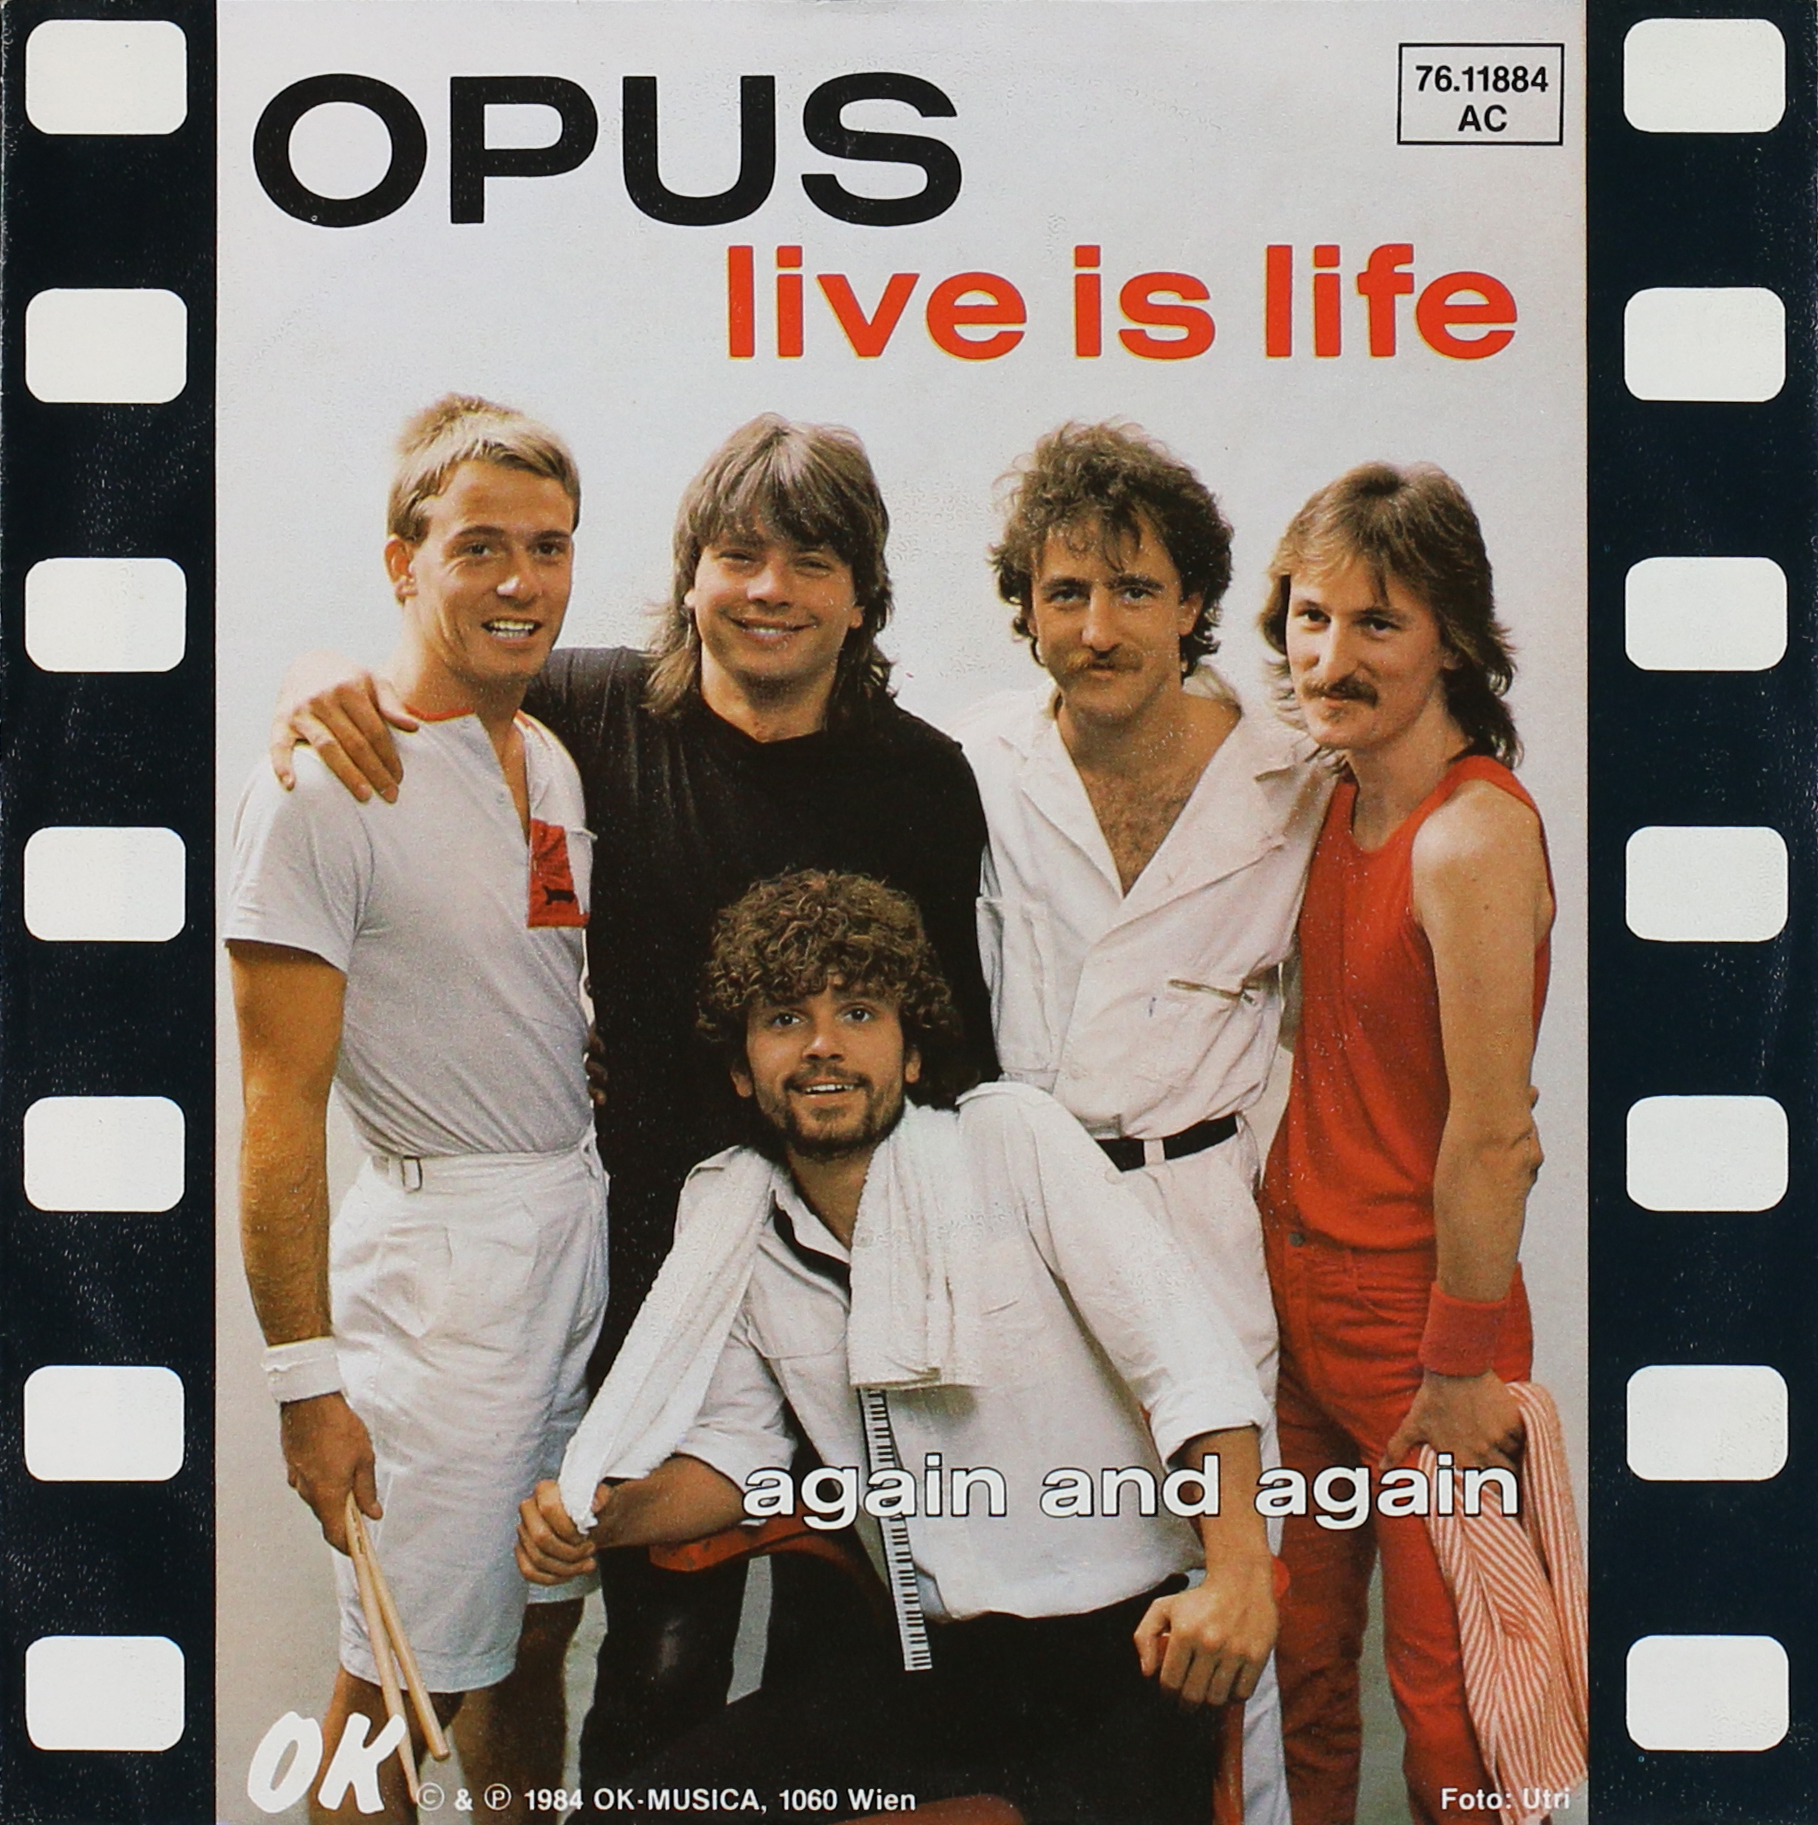 Группа лайф песни. Группа опус Life is Life. Opus Live is Life обложка. Opus альбомы. Opus, Opus Live is Life обложка.